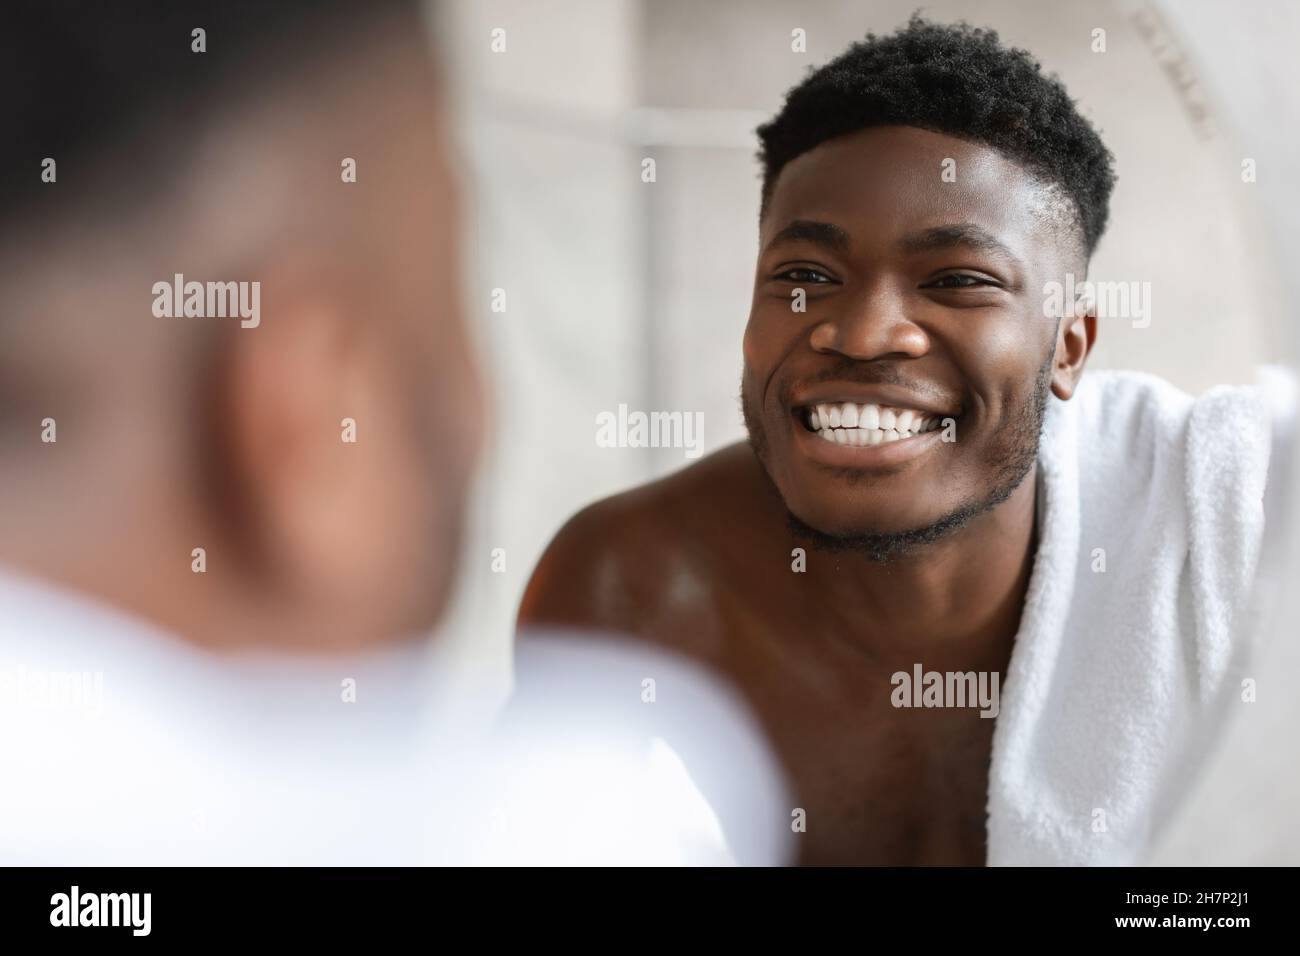 L'homme africain regarde le sourire en terre cuite dans le miroir dans la salle de bains Banque D'Images